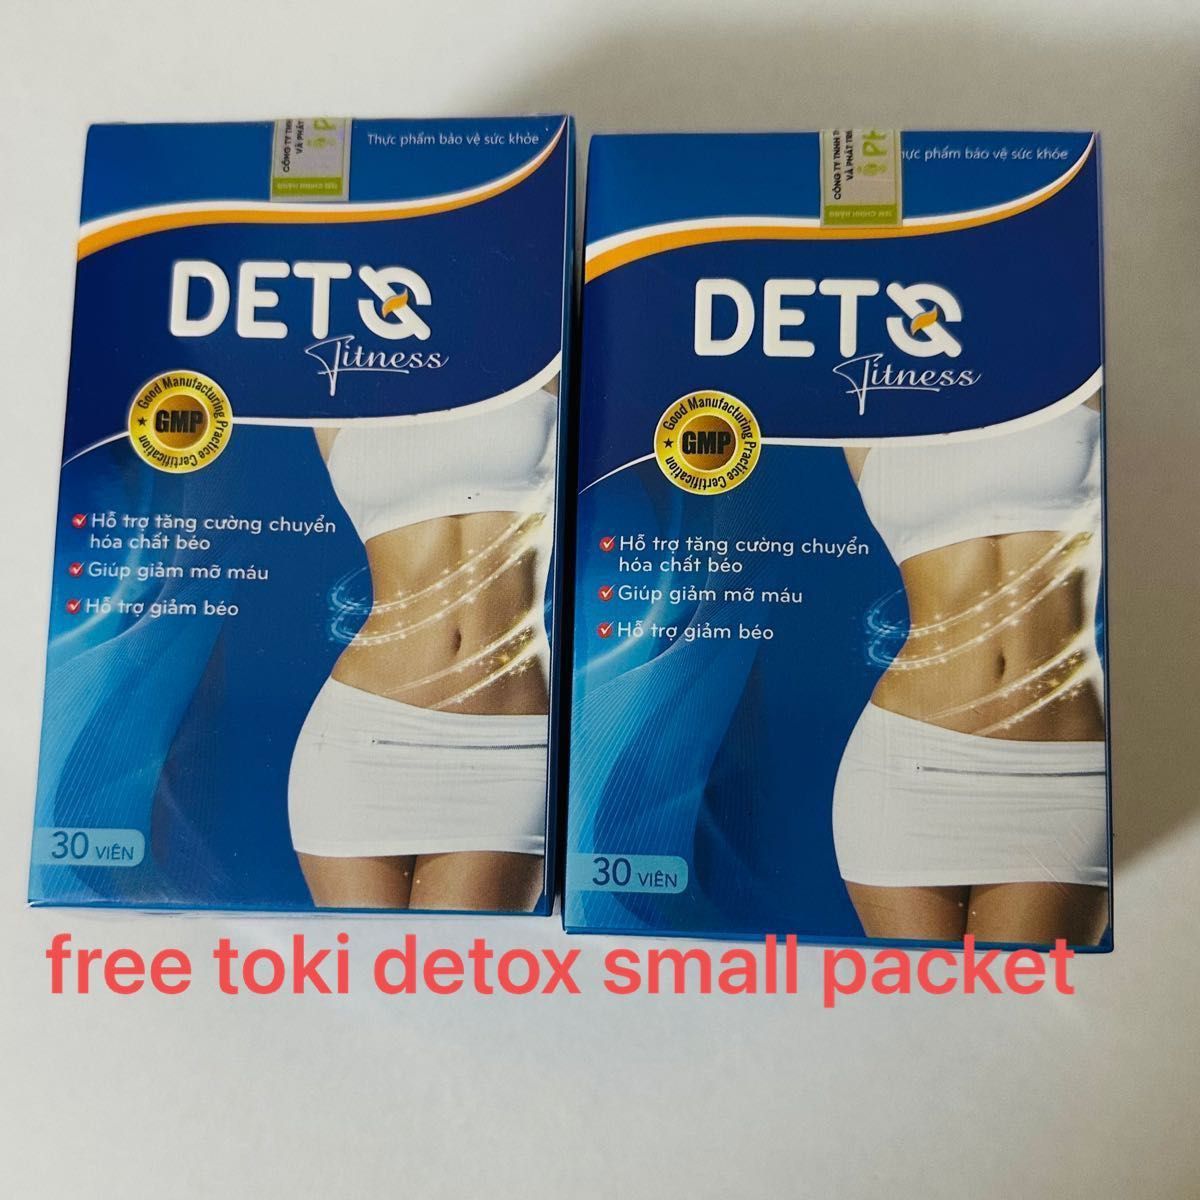 デッツ フィットネス 2箱dets fitness 2boxes free toki detox small packet